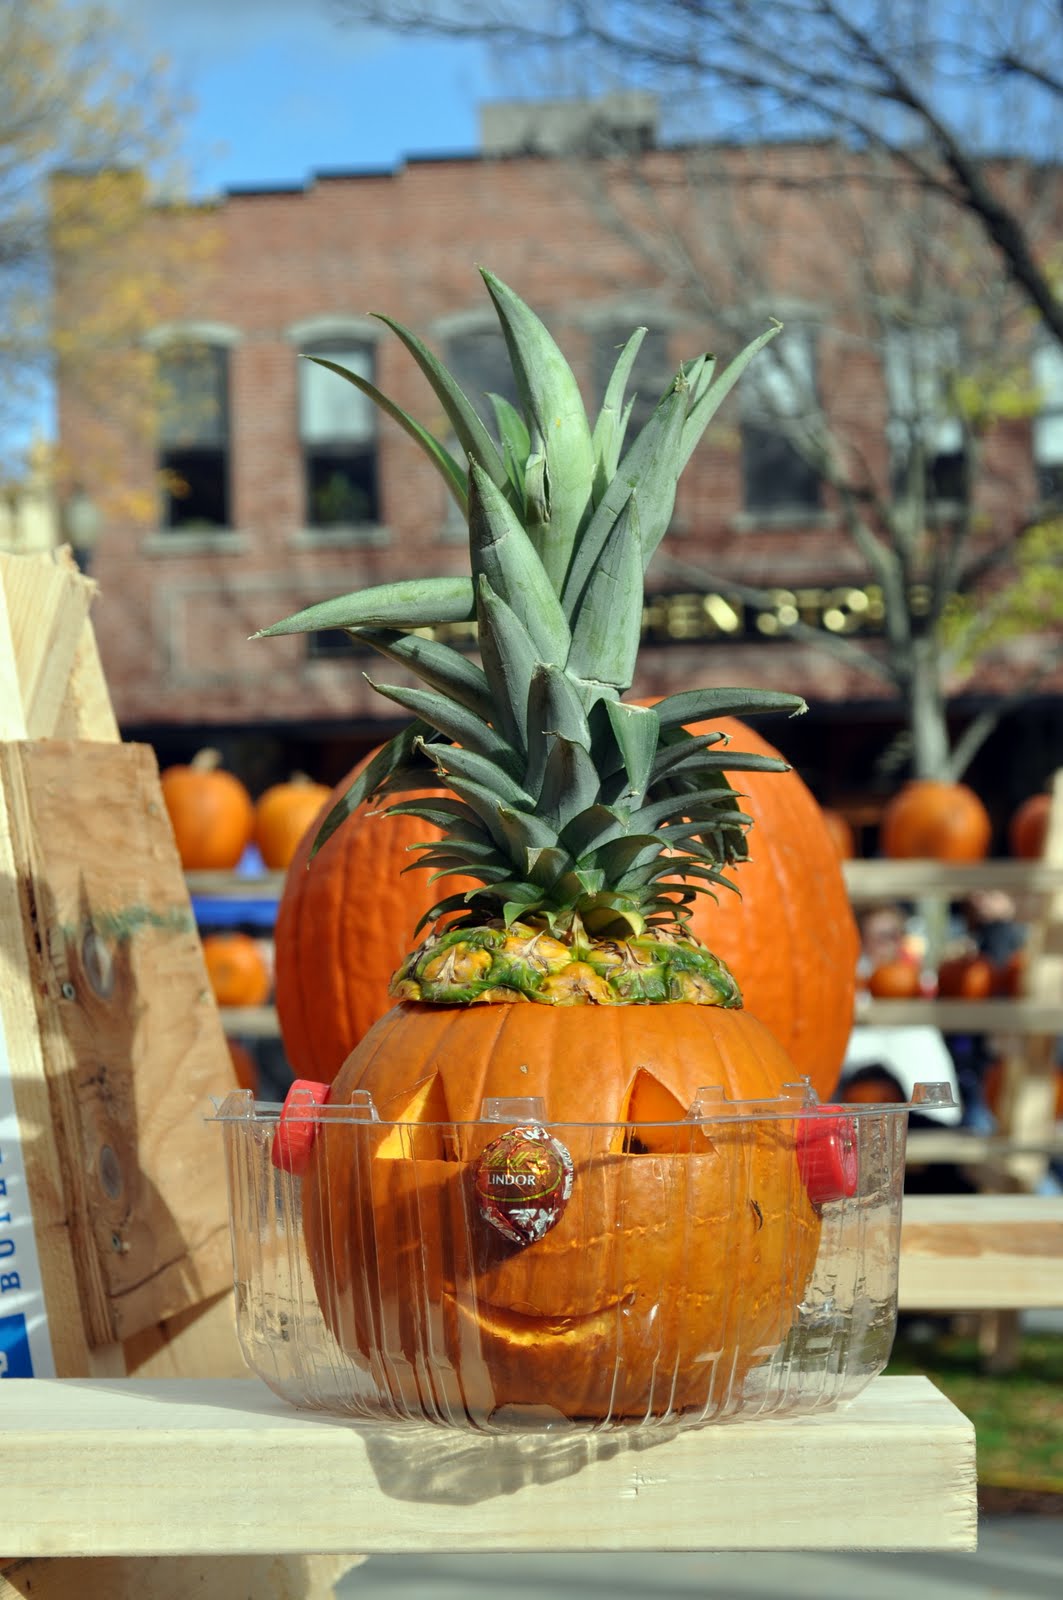 New England Photos: Keene Pumpkin Festival - Part 2